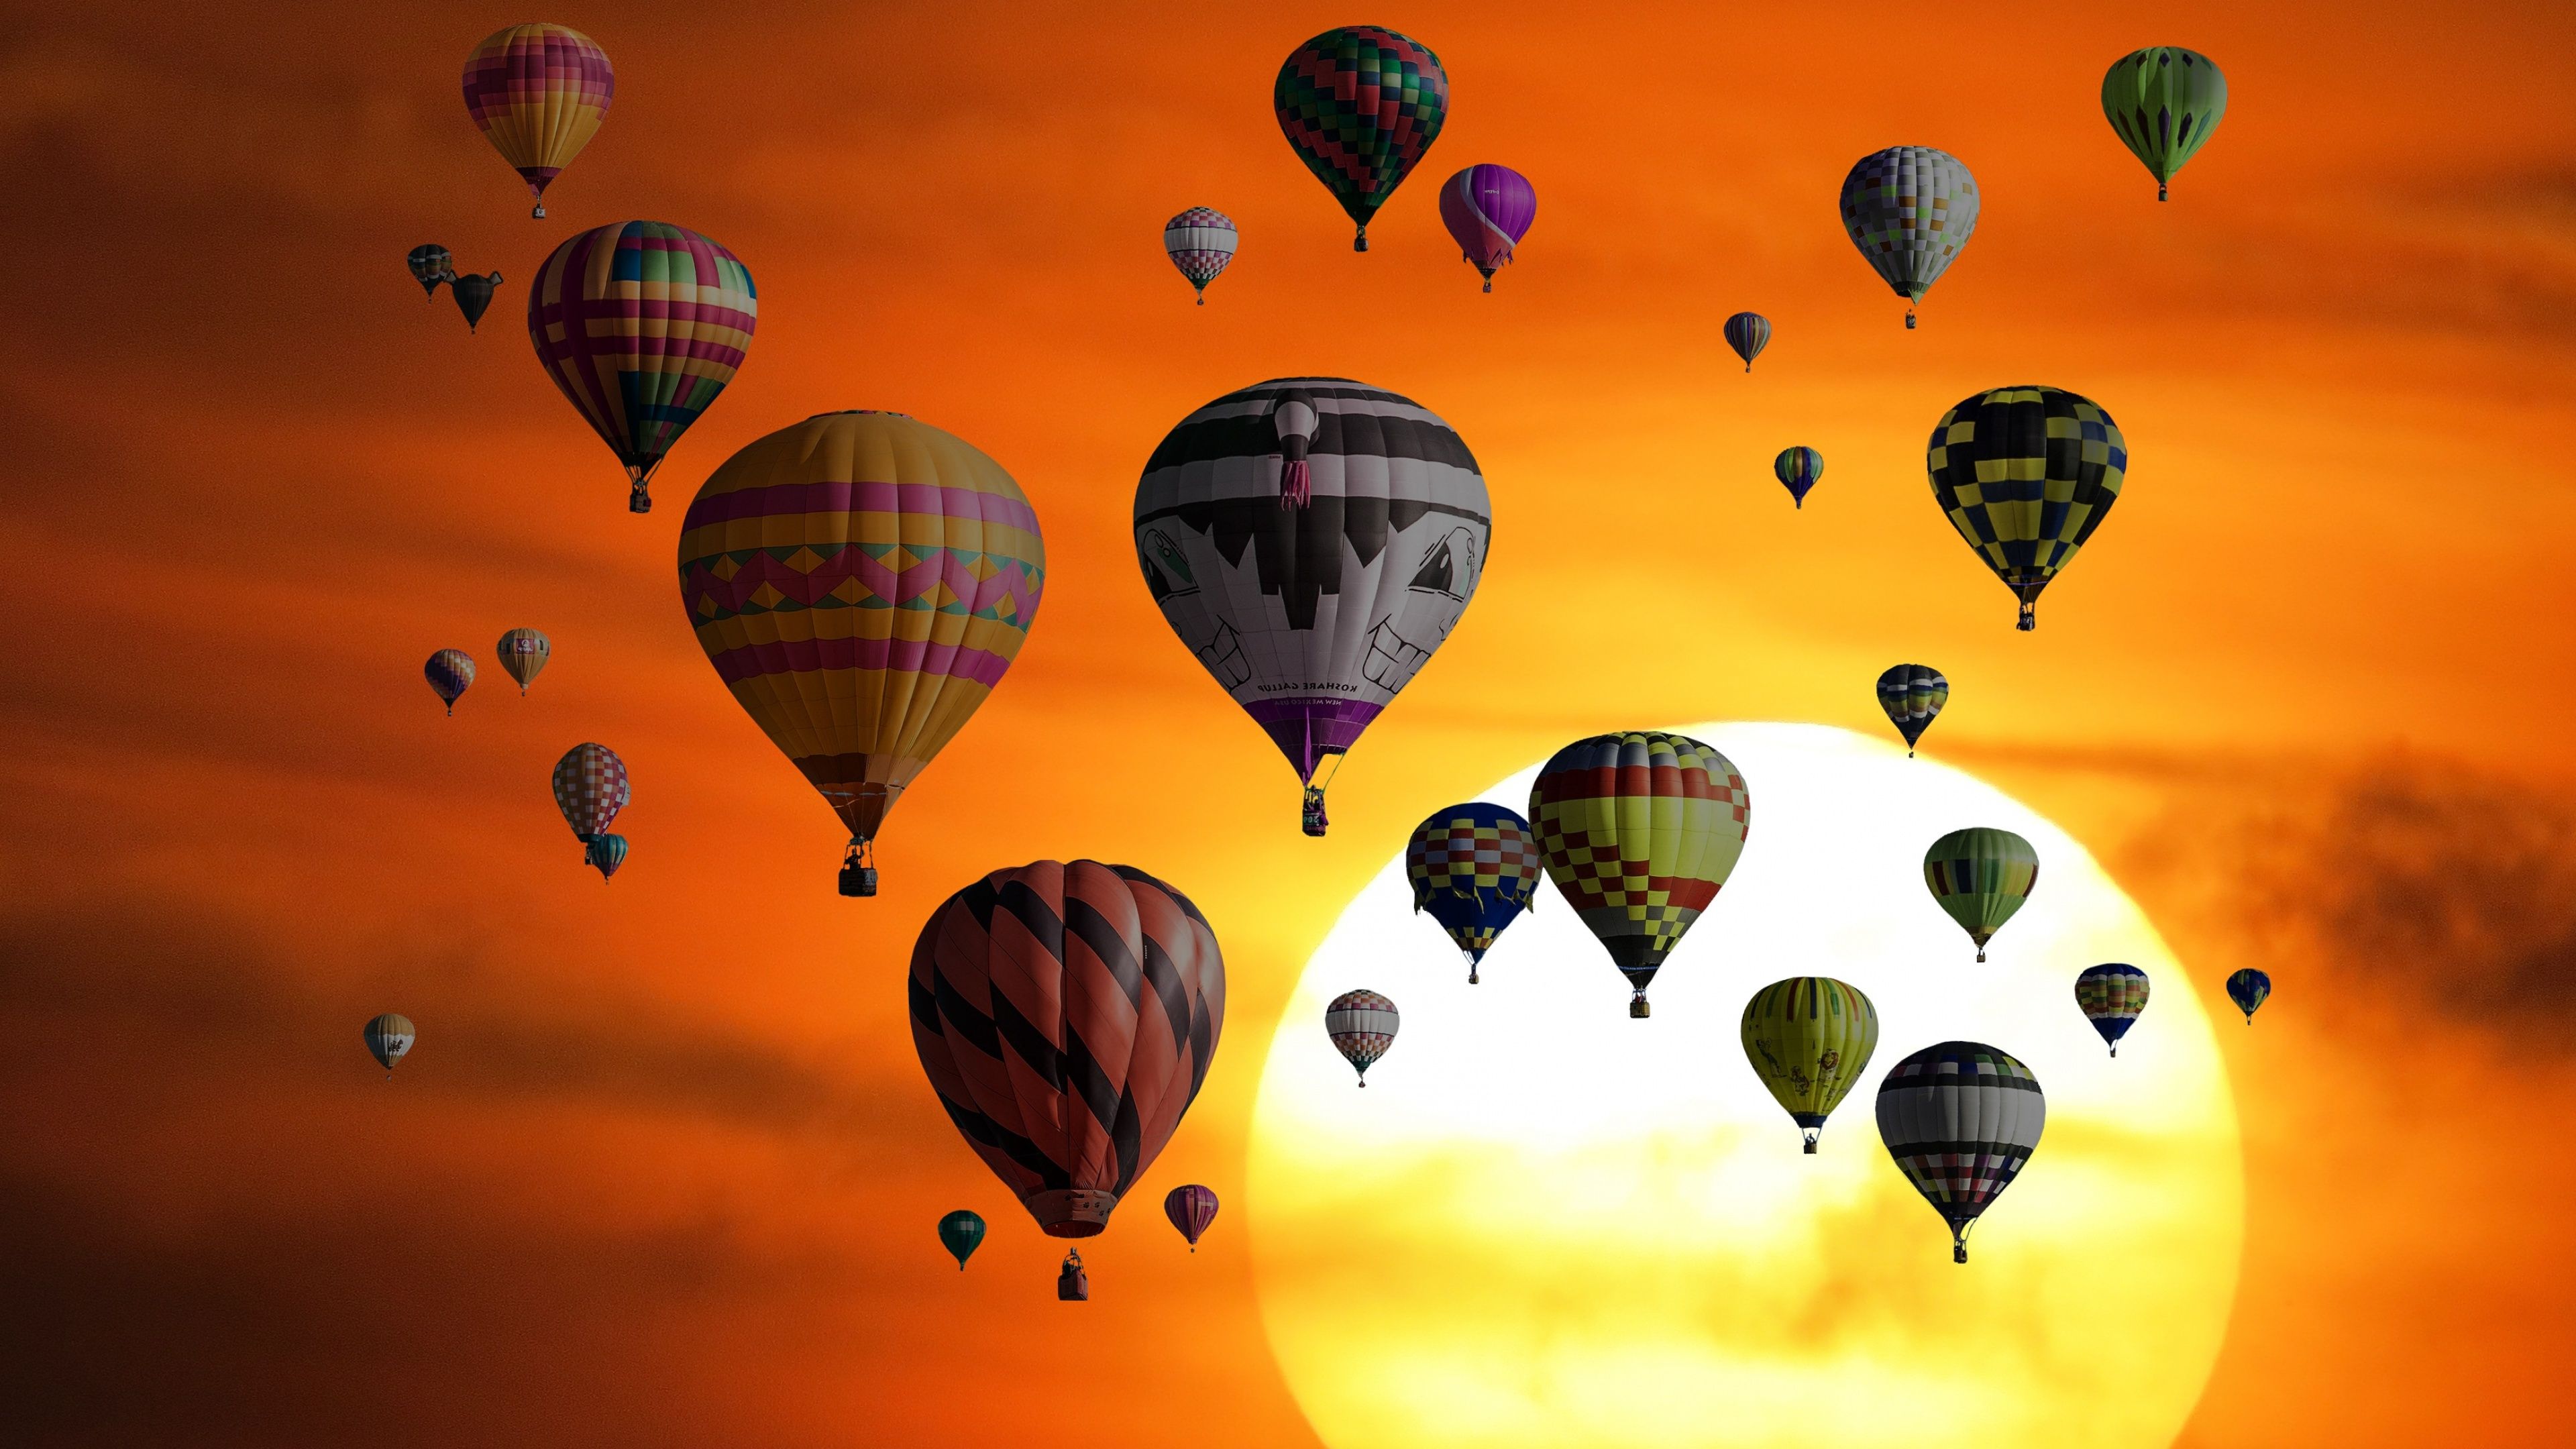 Sunset Wallpaper 4K, Hot air balloons